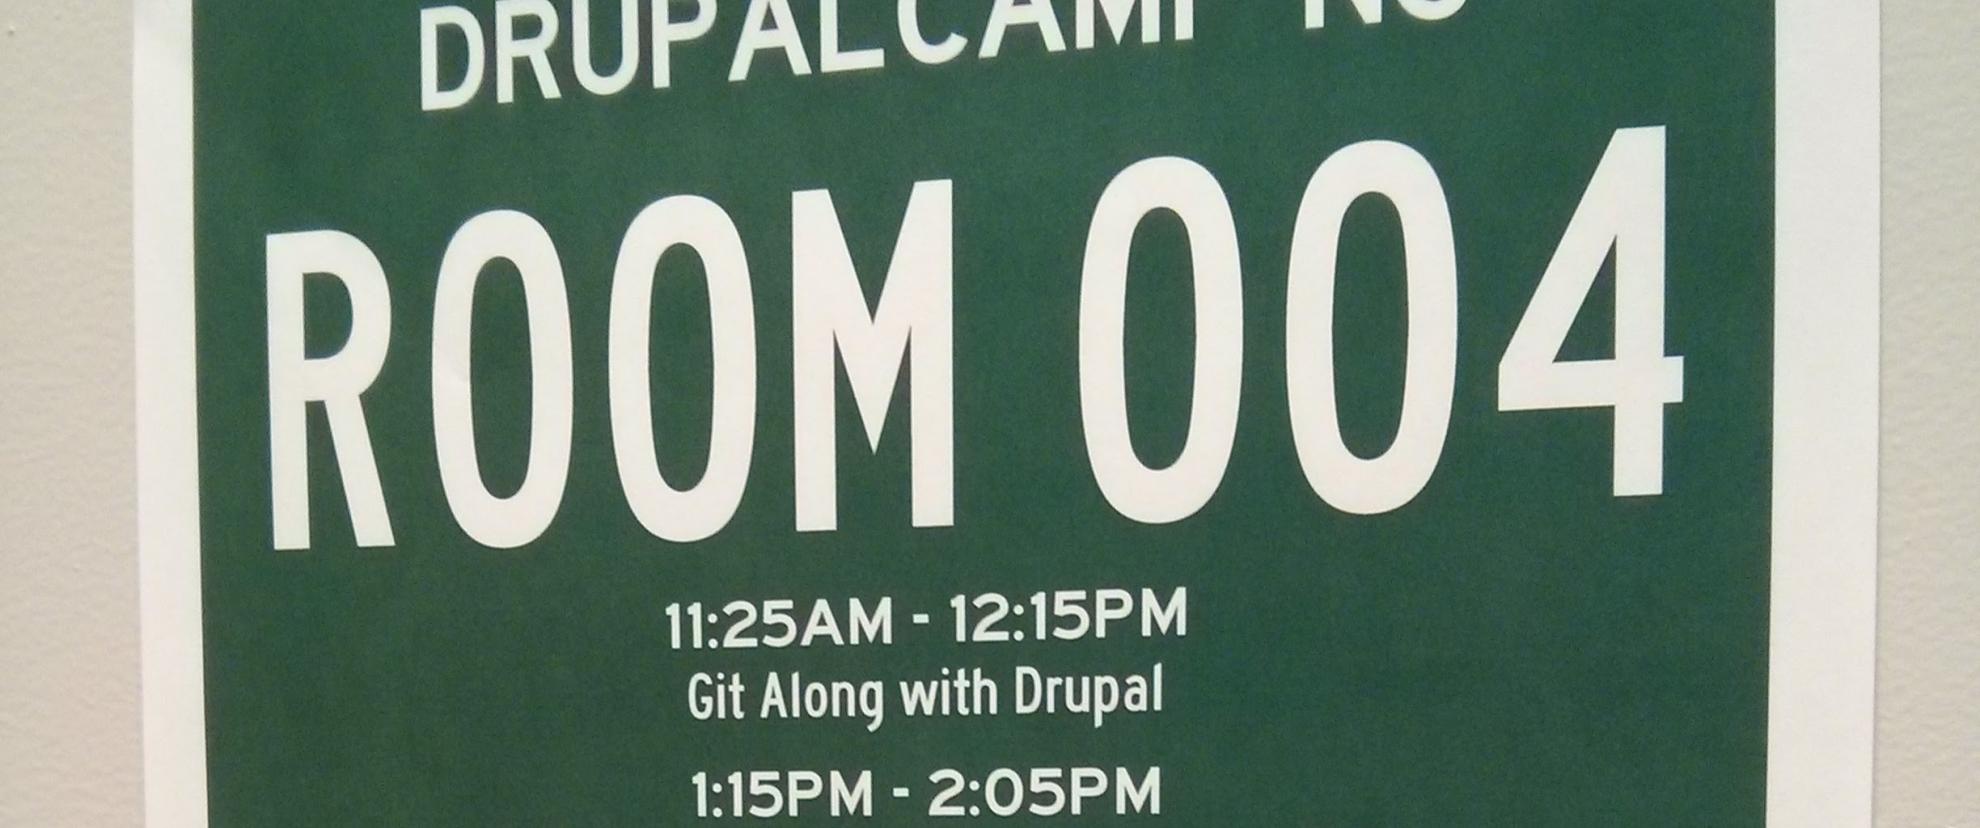 DrupalCamp Room Sign